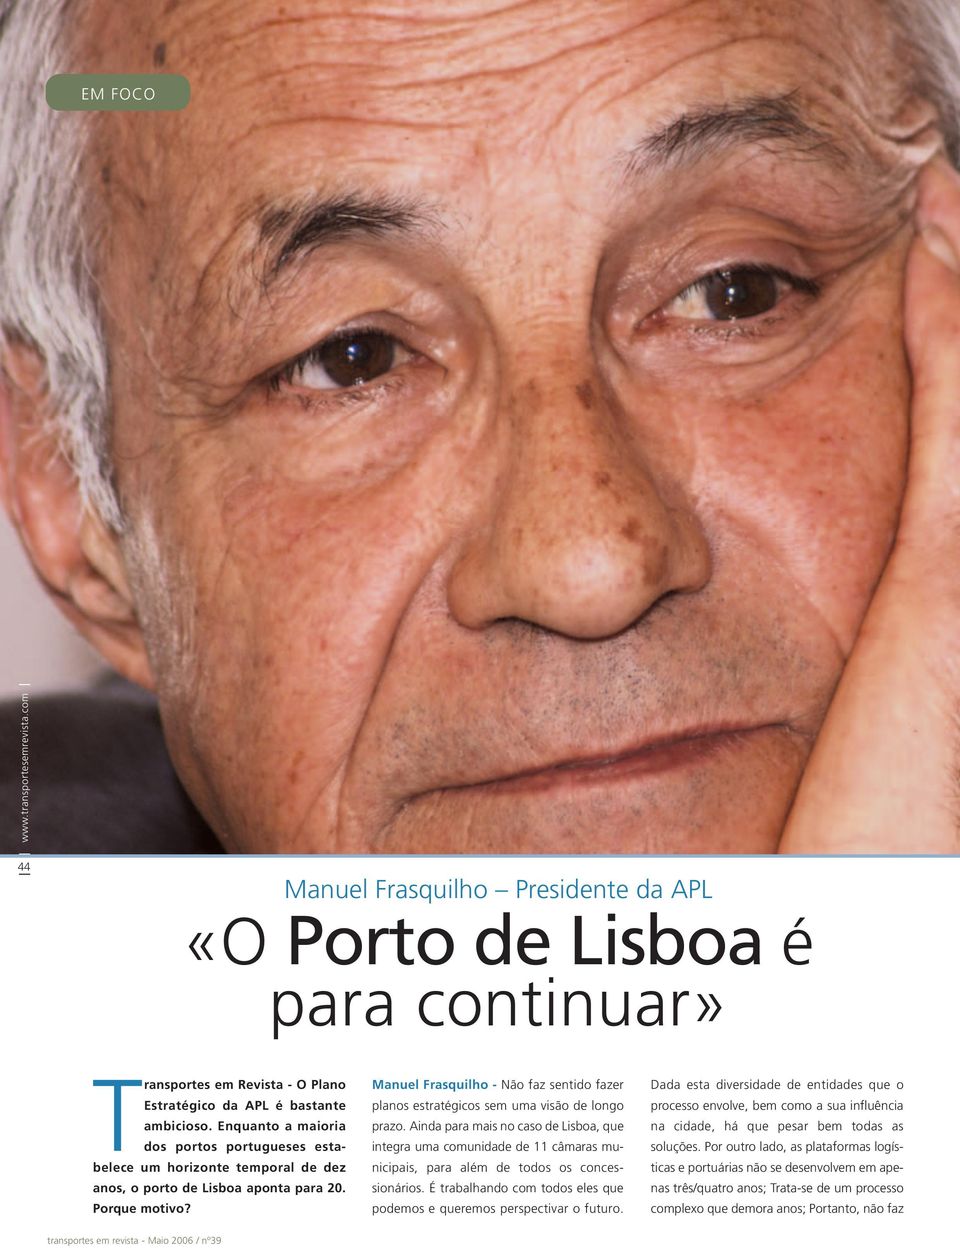 Manuel Frasquilho - Não faz sentido fazer planos estratégicos sem uma visão de longo prazo.